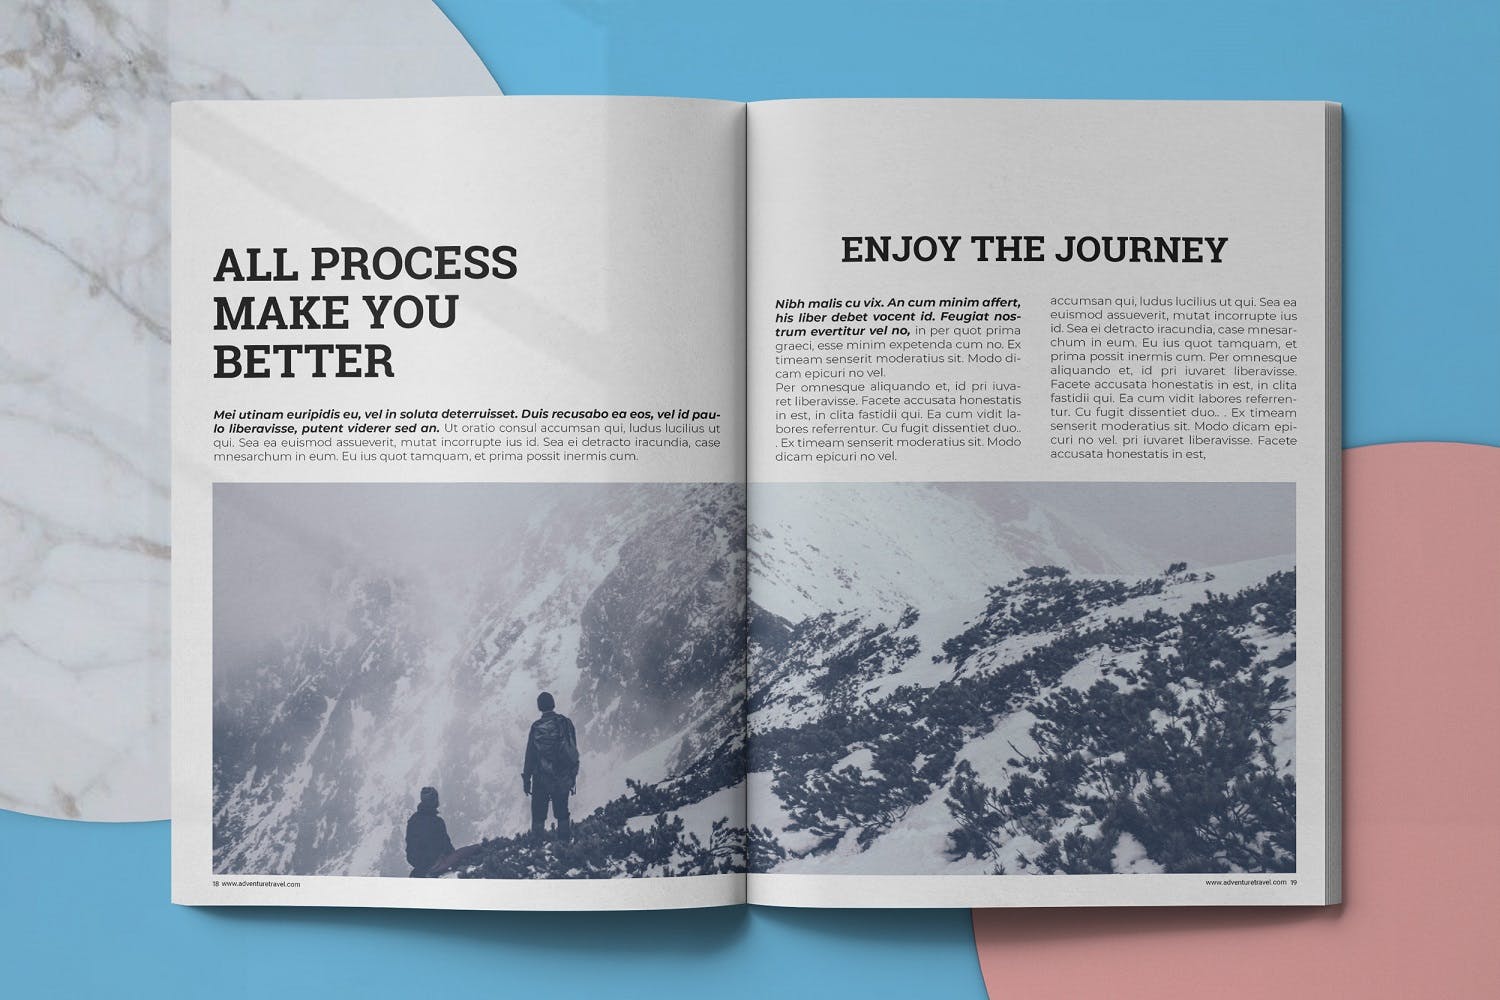 冒险旅行主题非凡图库精选杂志排版设计模板 Adventure Travel Magazine Template插图(9)